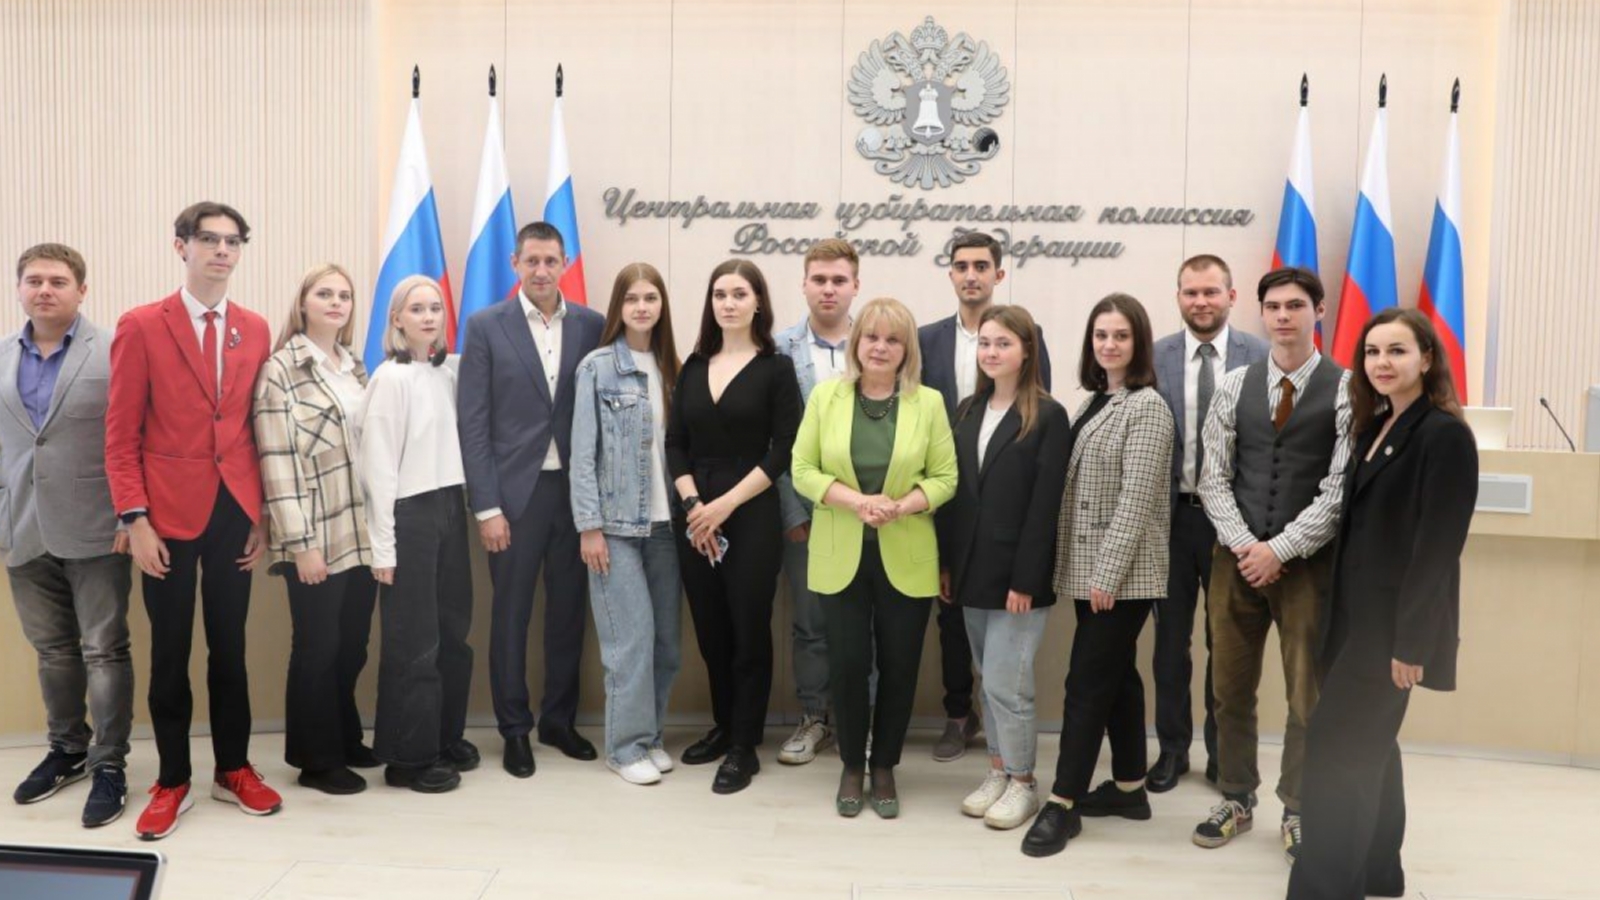 Памфилова рассказала об участии молодёжи в выборах